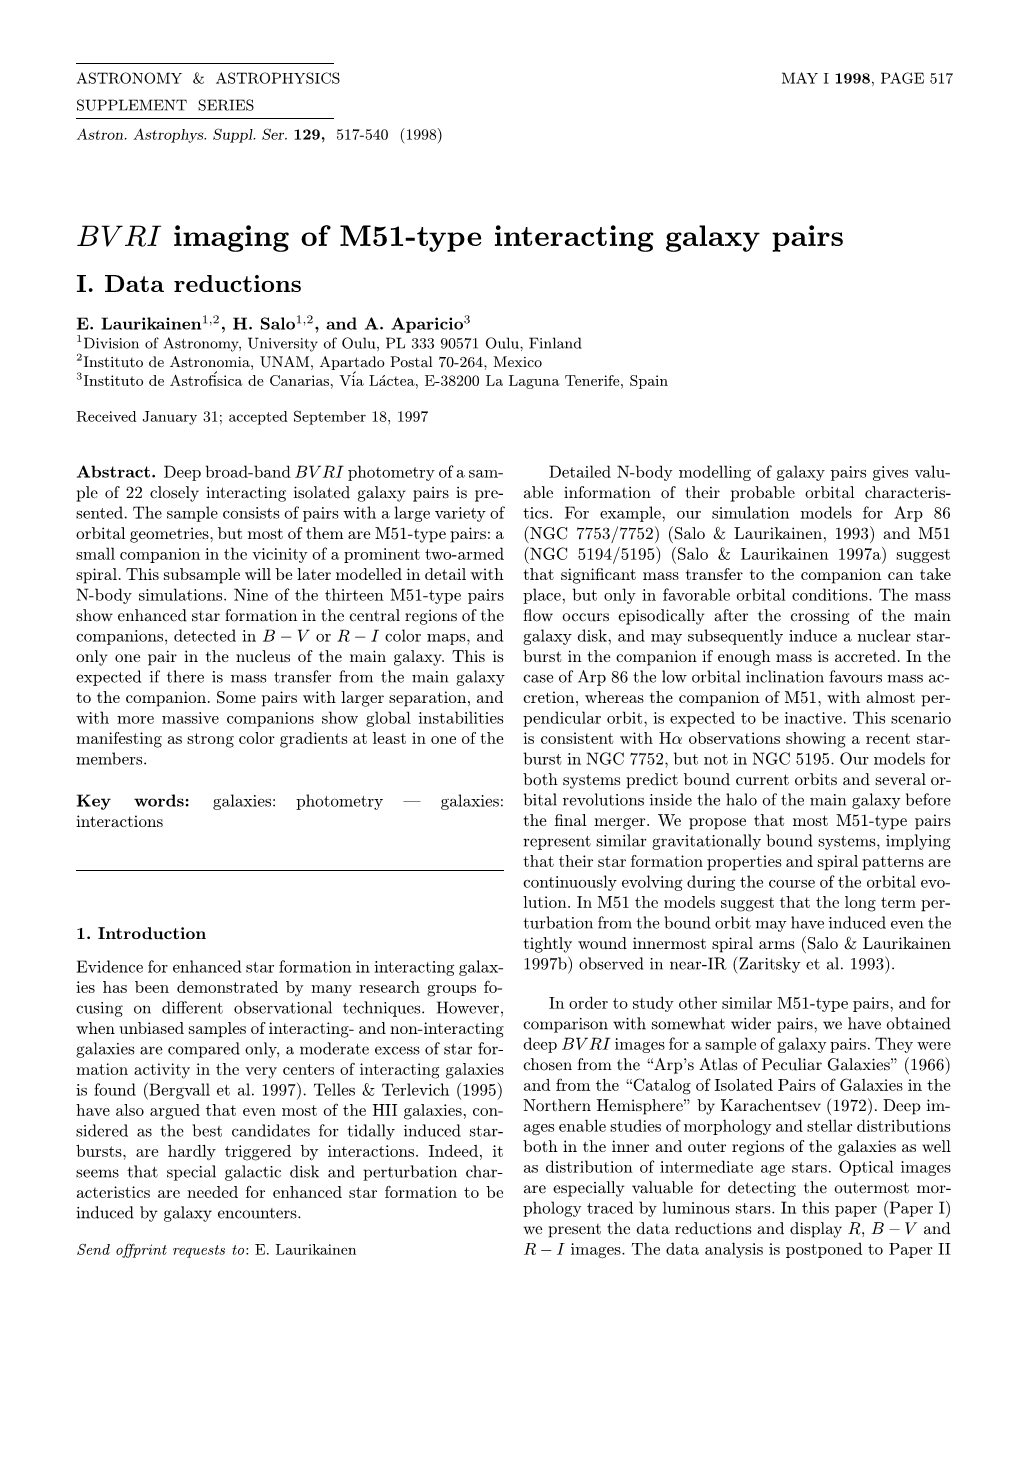 BVRI Imaging of M51-Type Interacting Galaxy Pairs